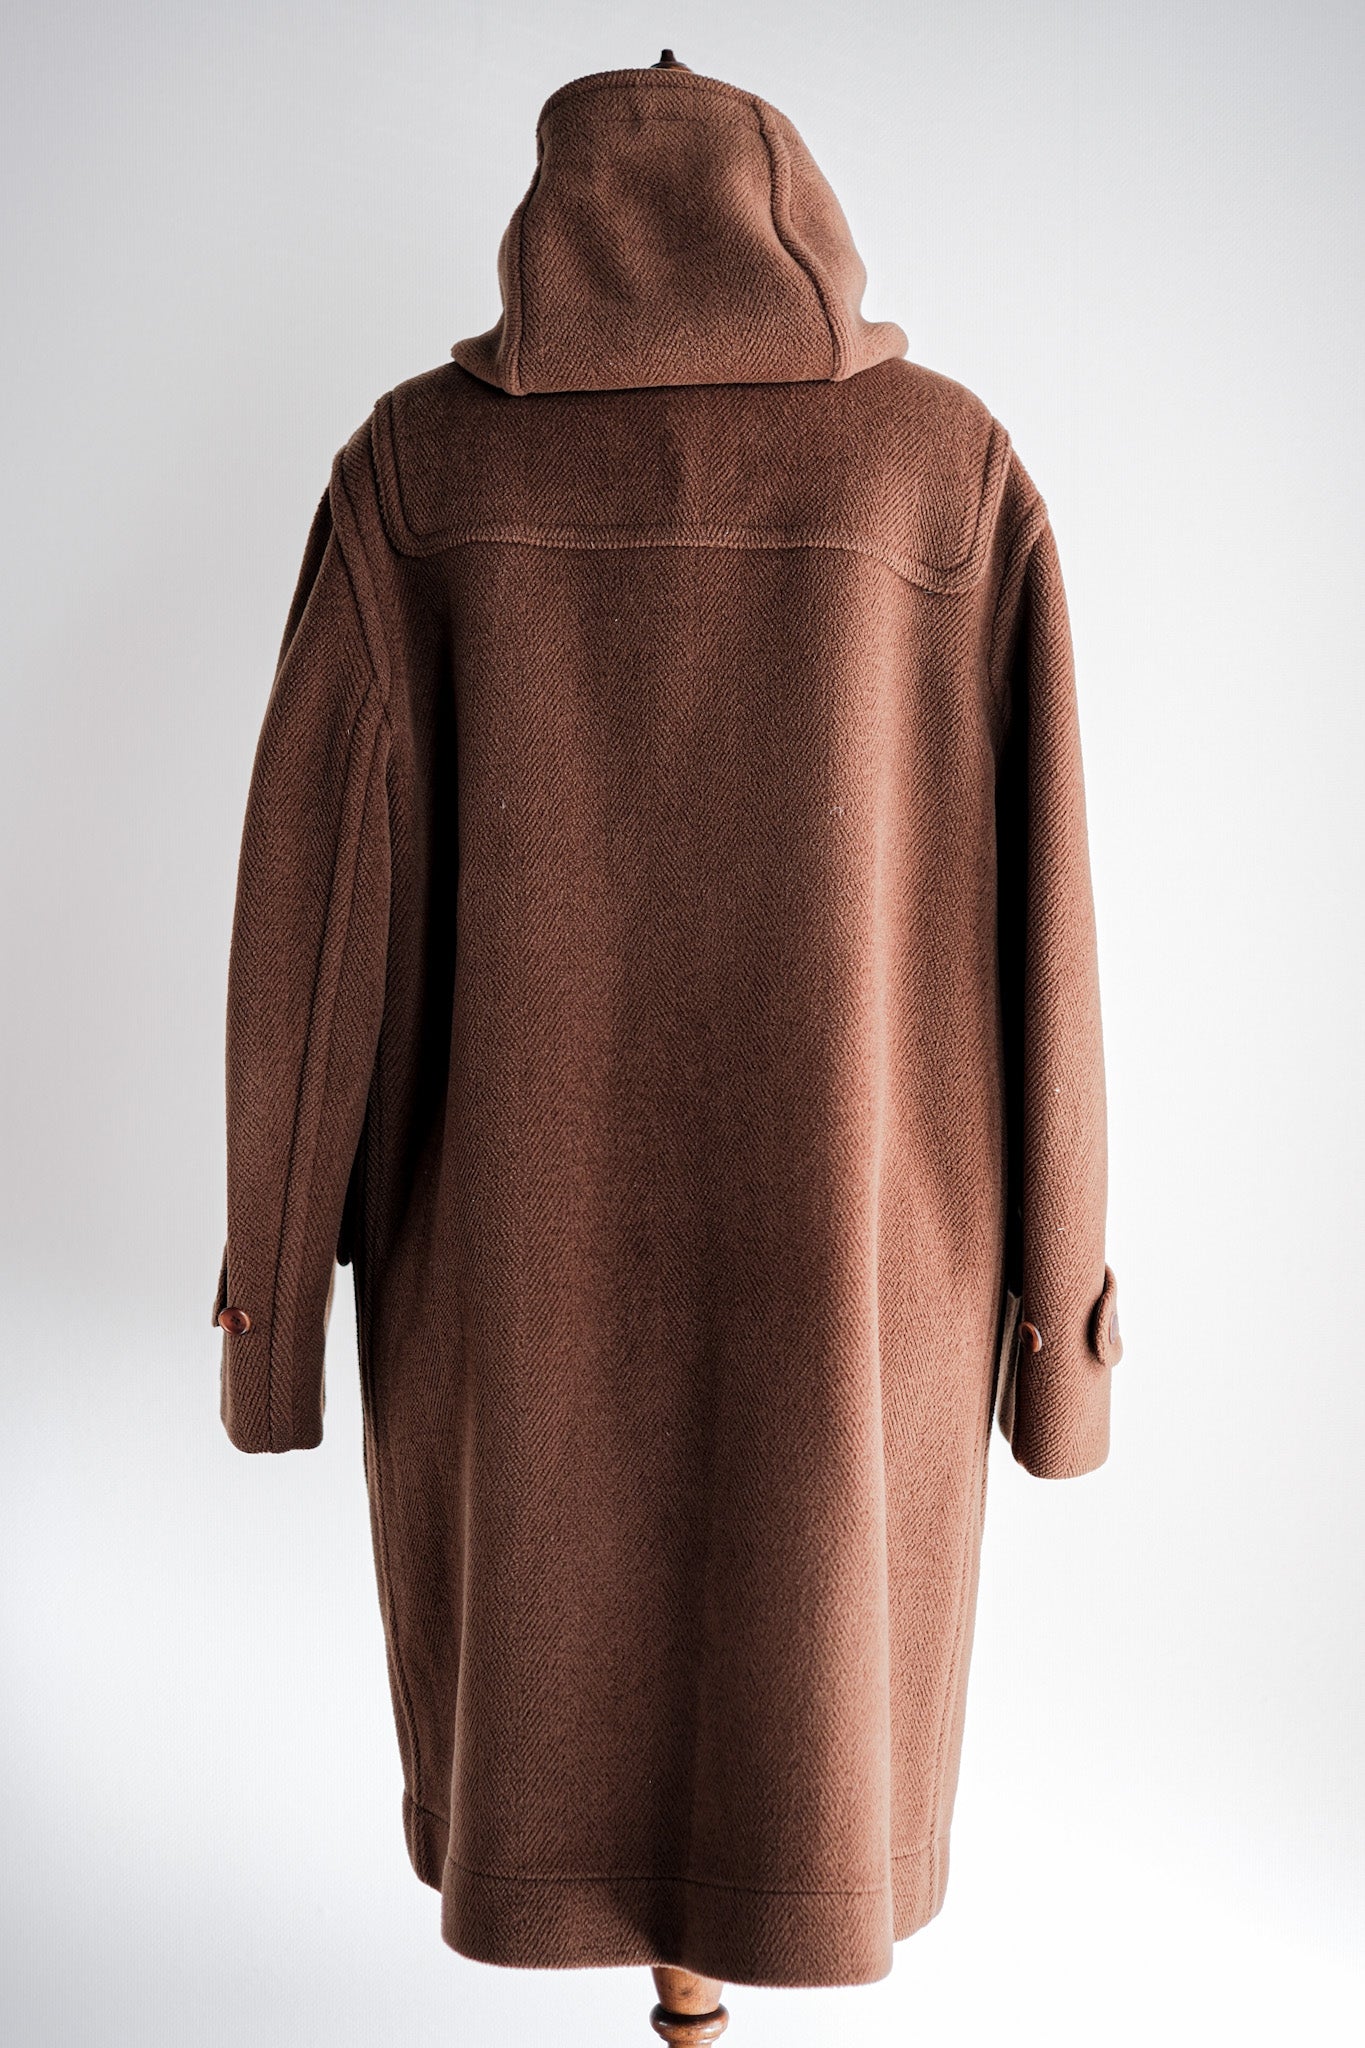 [~ 90's] Old Invertere Wool Duffle Coat "Moorbrook" "de Paz NOTE SECTION"